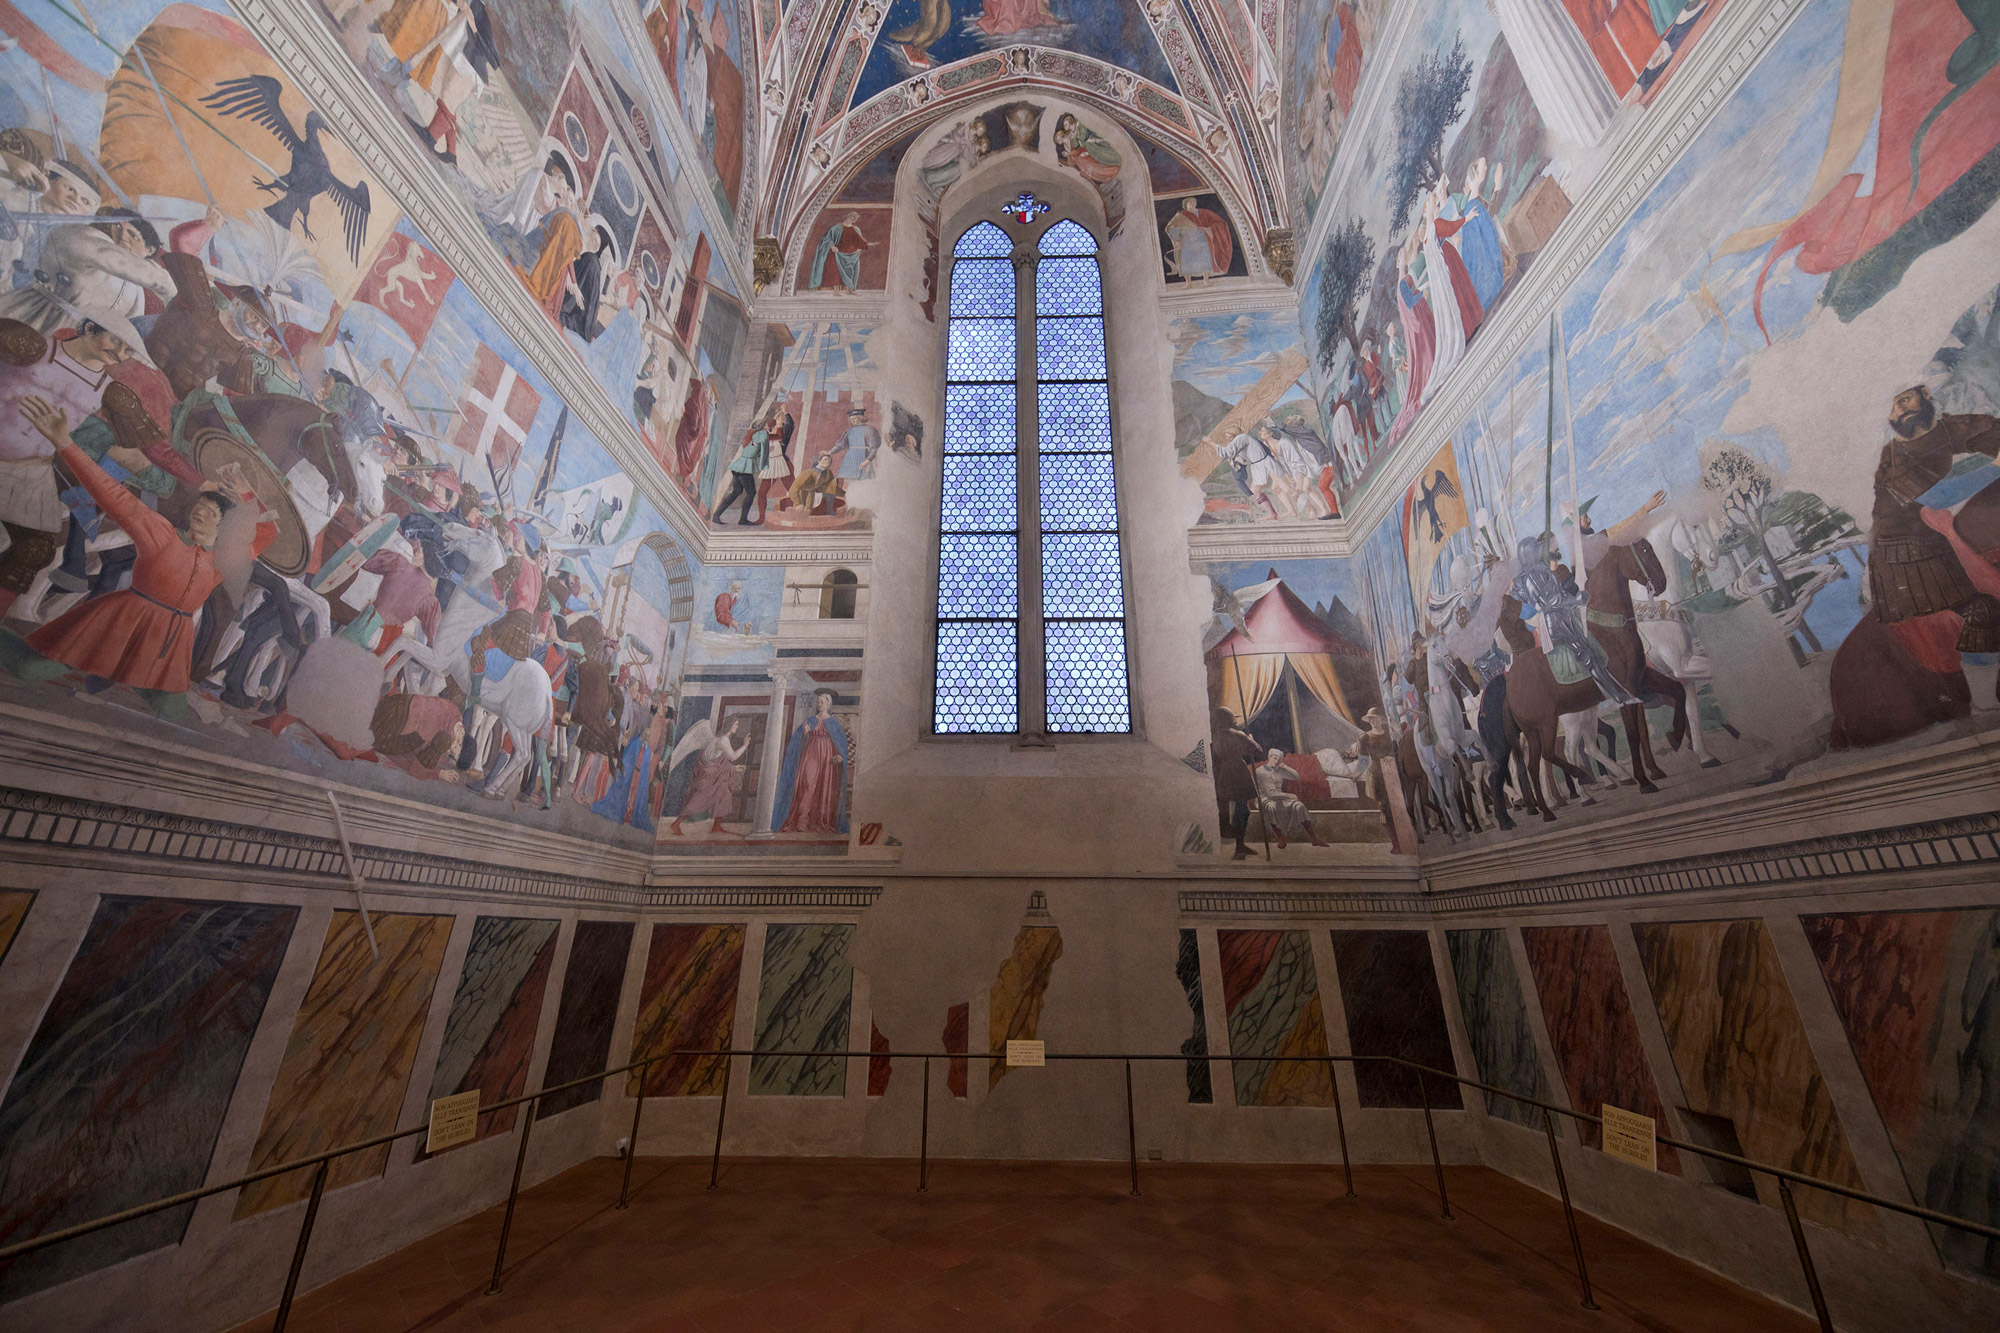 Renewed lighting for Piero della Francesca